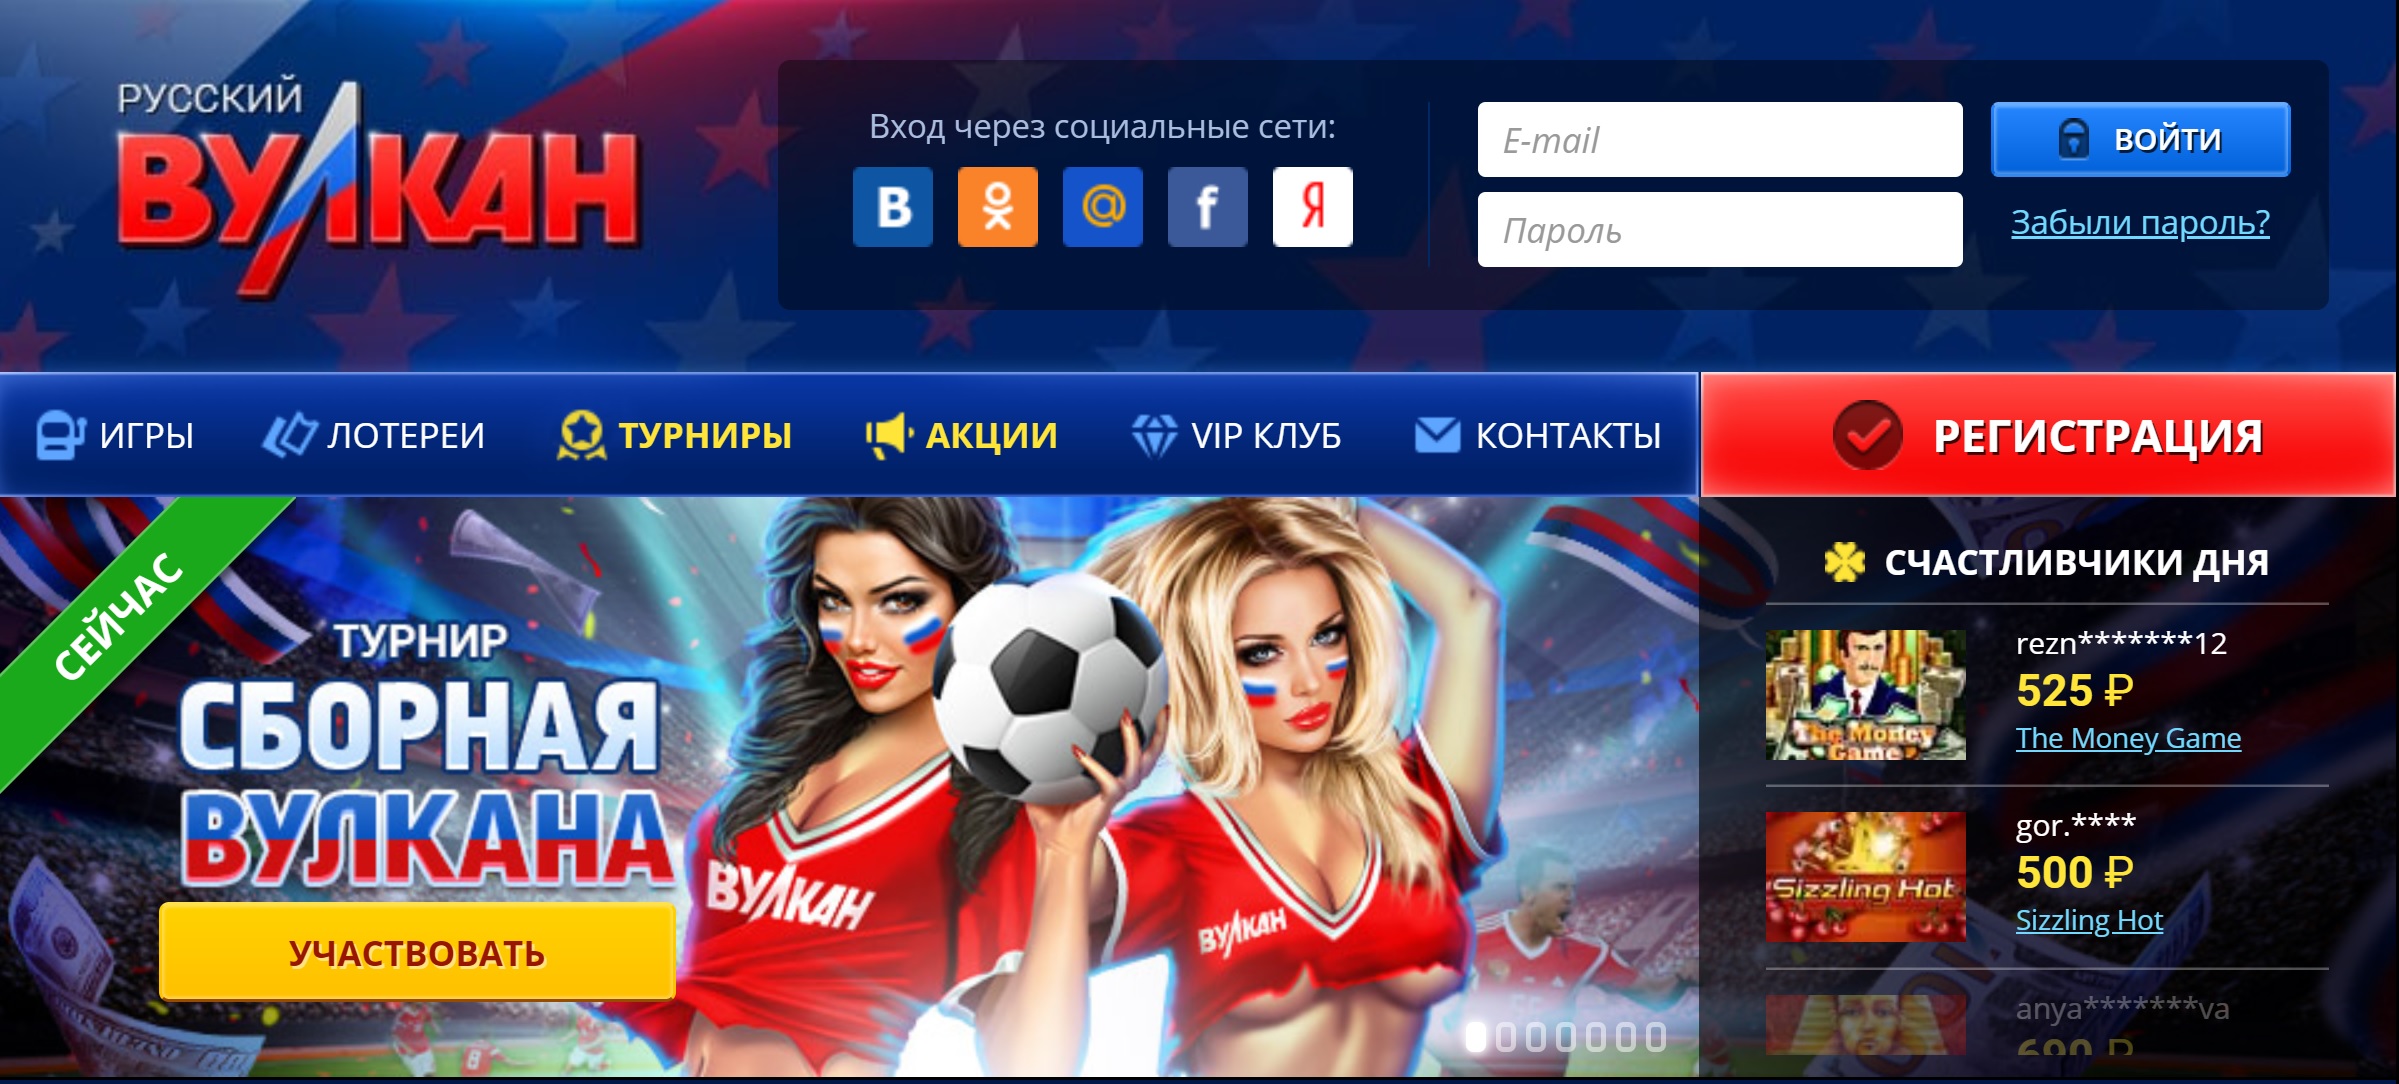 Отзывы о русском казино фаворит казино онлайн